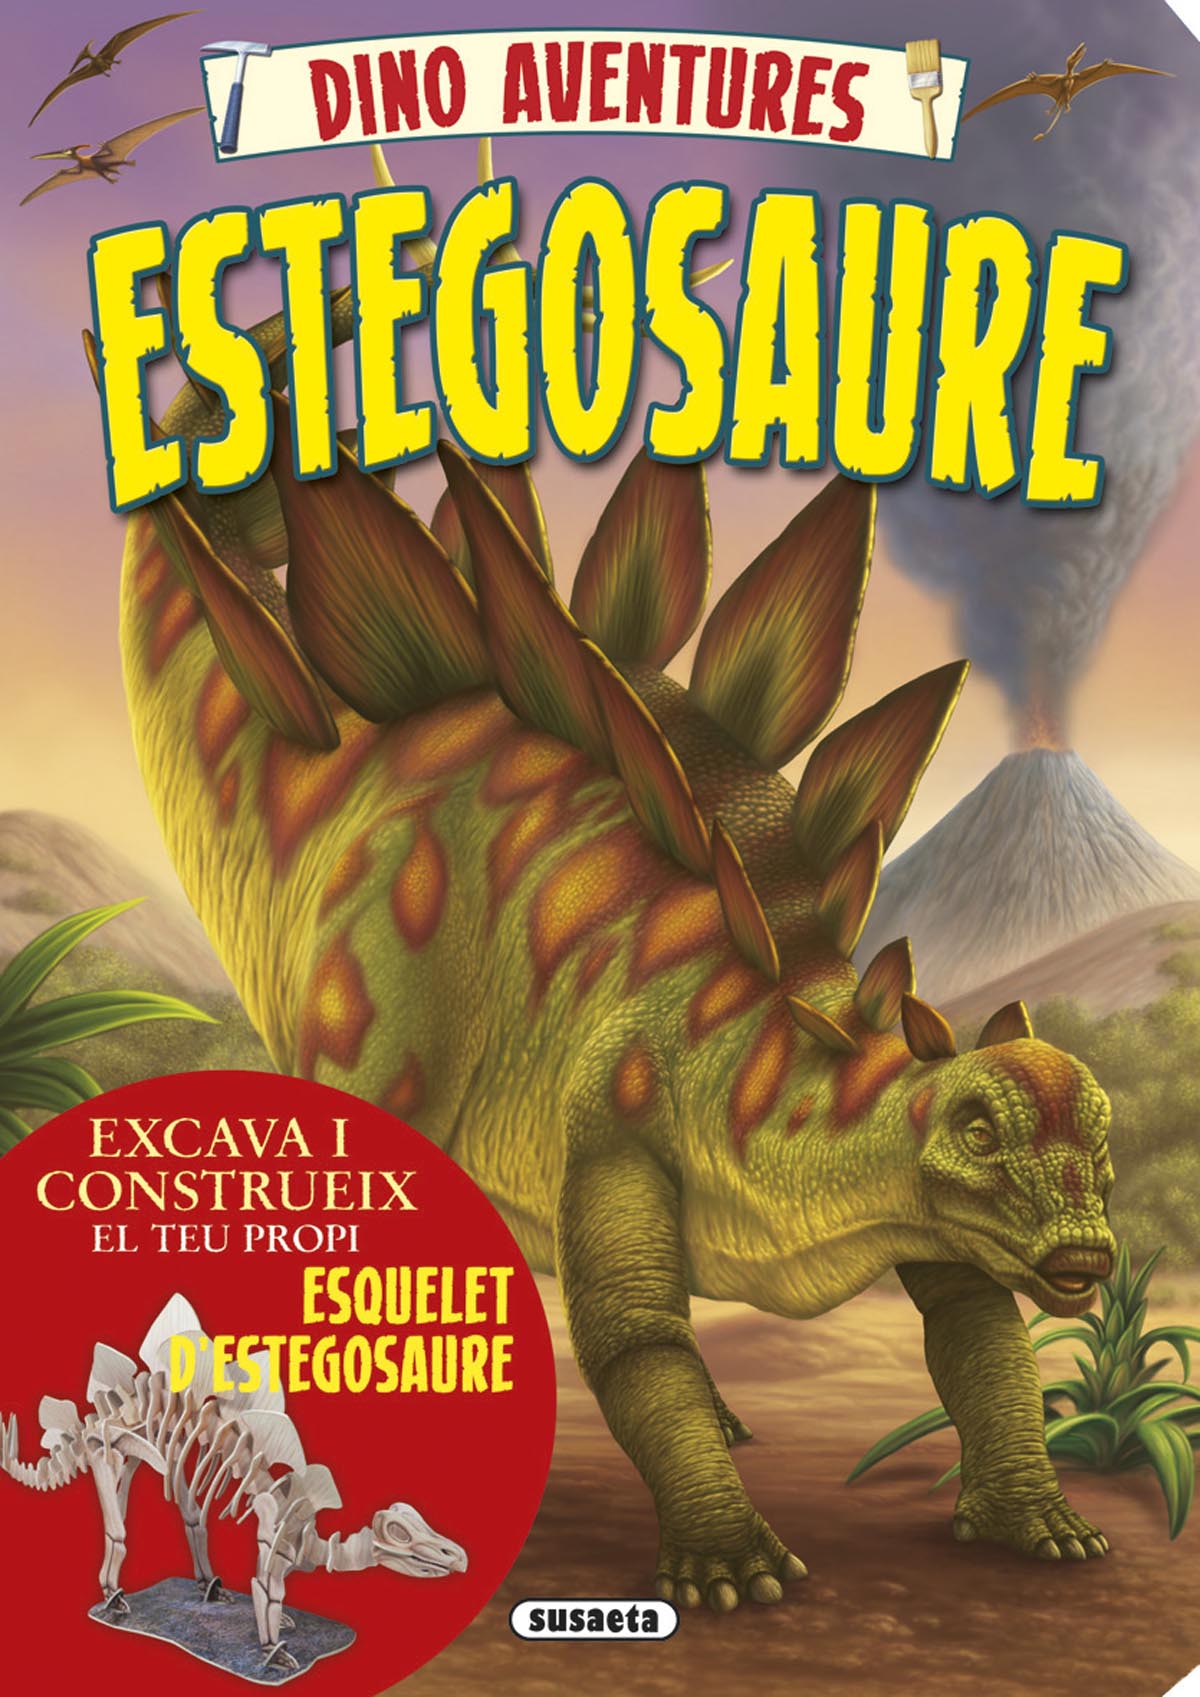 Estegosaure